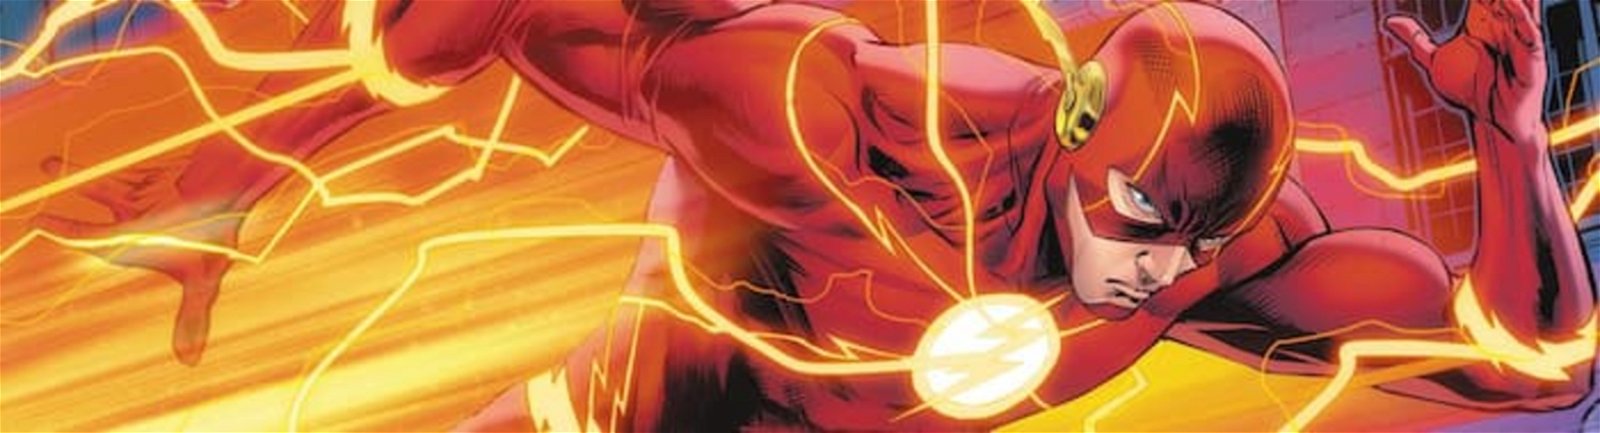 Flash ha demostrado ser capaz de viajar entre dimensiones y regresar en el tiempo al correr